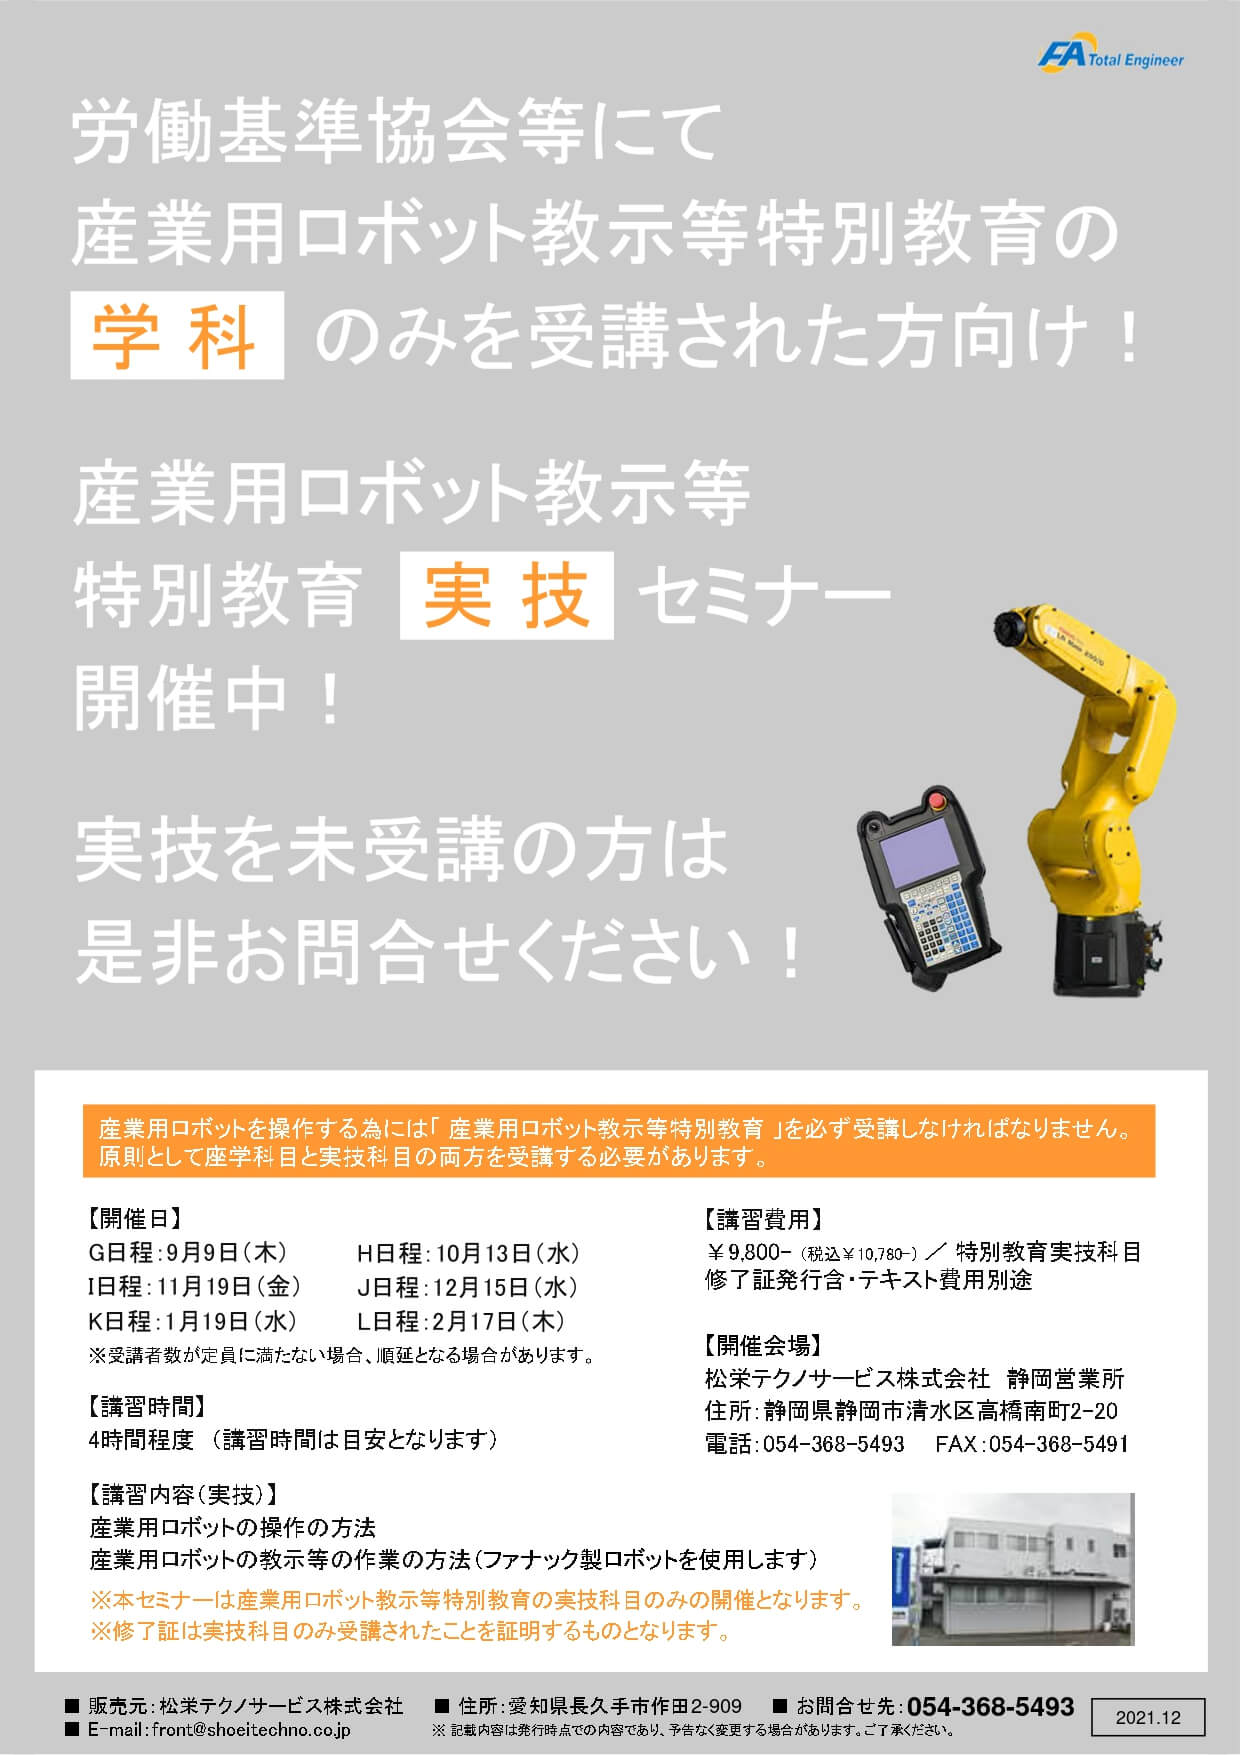 【静岡県開催】産業用ロボット特別教育（教示等）実技セミナー開催のお知らせ【実技のみ】